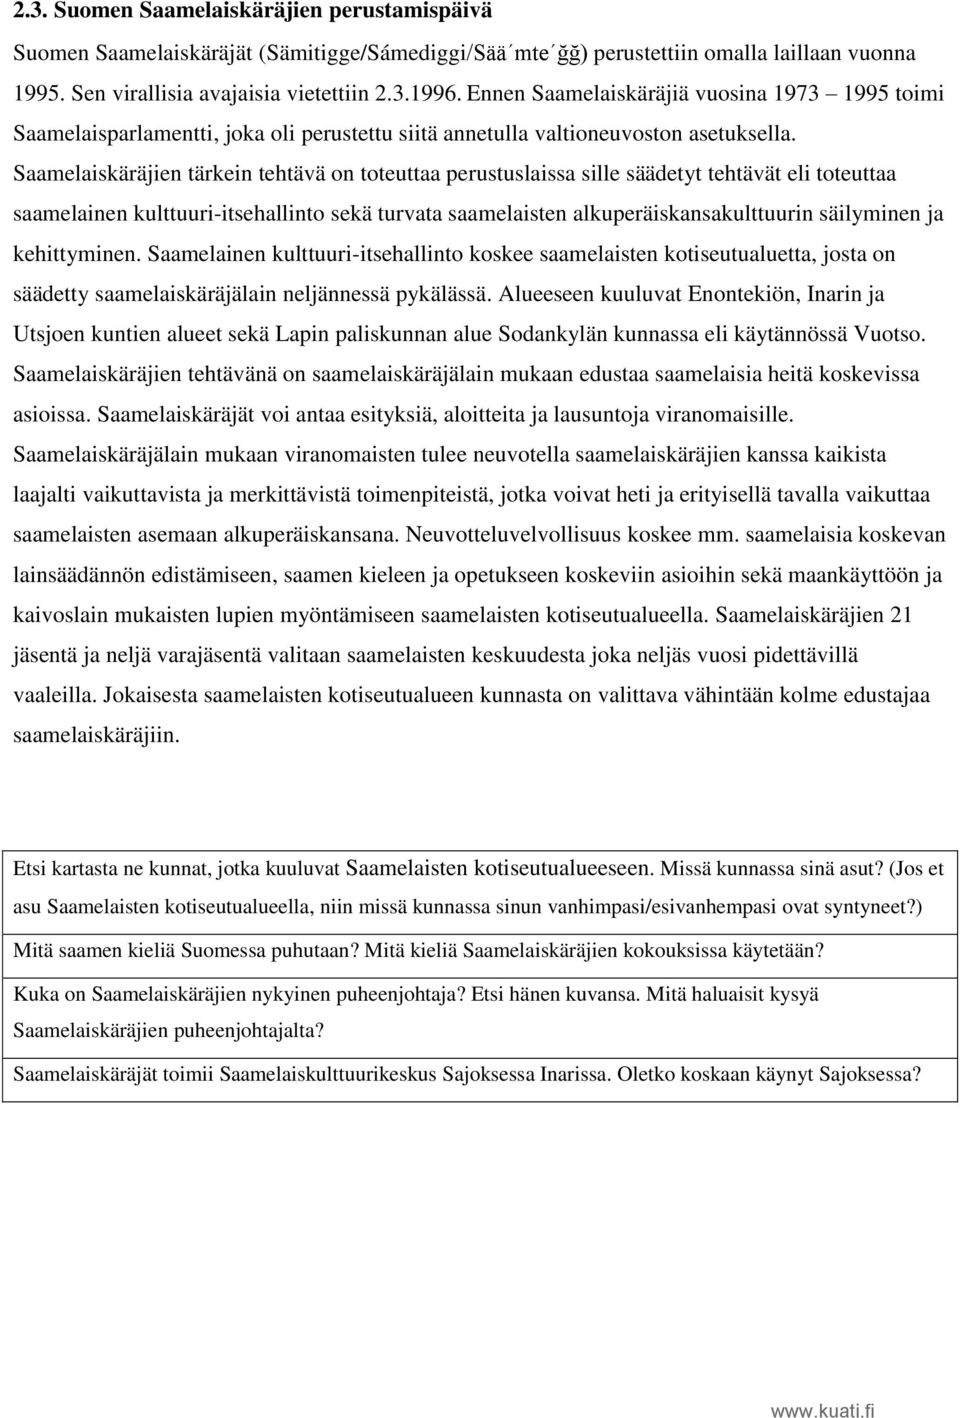 Saamelaiskäräjien tärkein tehtävä on toteuttaa perustuslaissa sille säädetyt tehtävät eli toteuttaa saamelainen kulttuuri-itsehallinto sekä turvata saamelaisten alkuperäiskansakulttuurin säilyminen